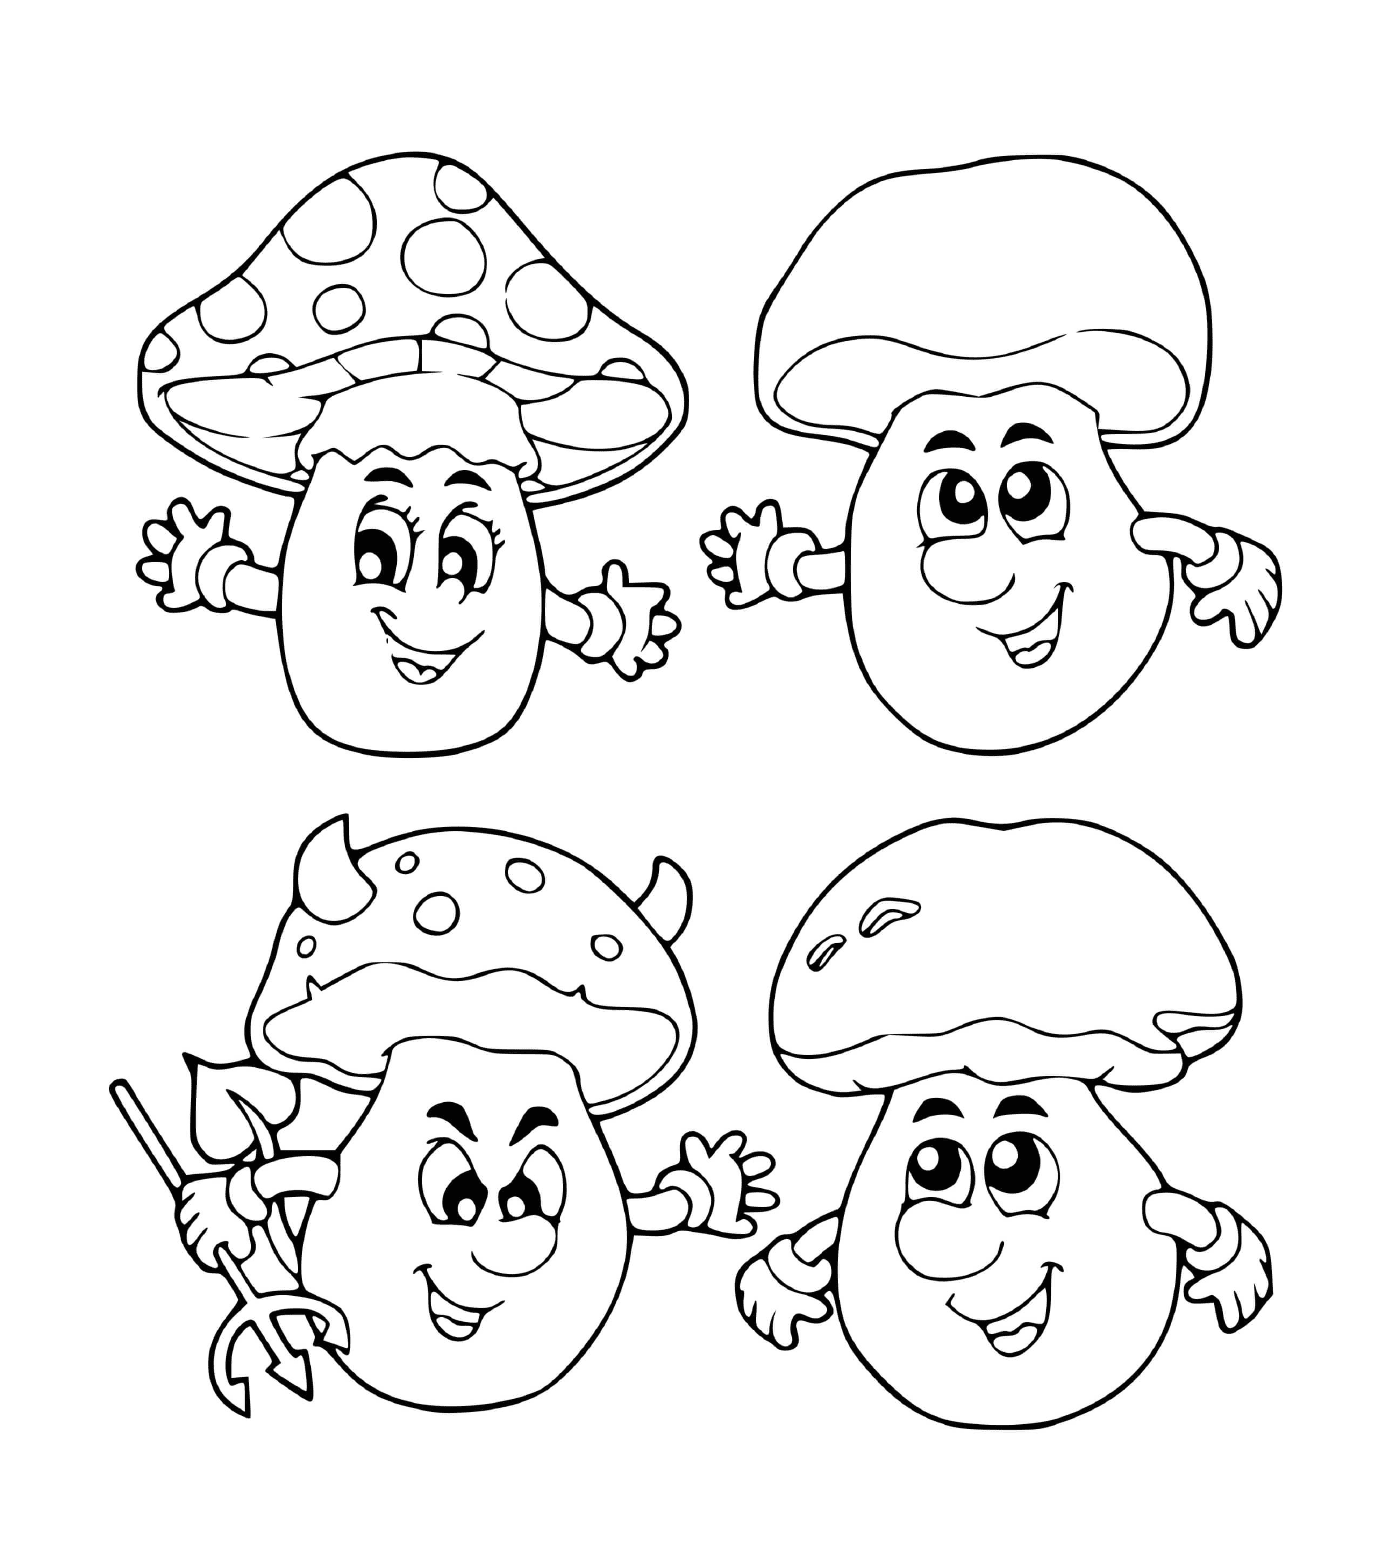  Четыре чёрных и белых гриба 